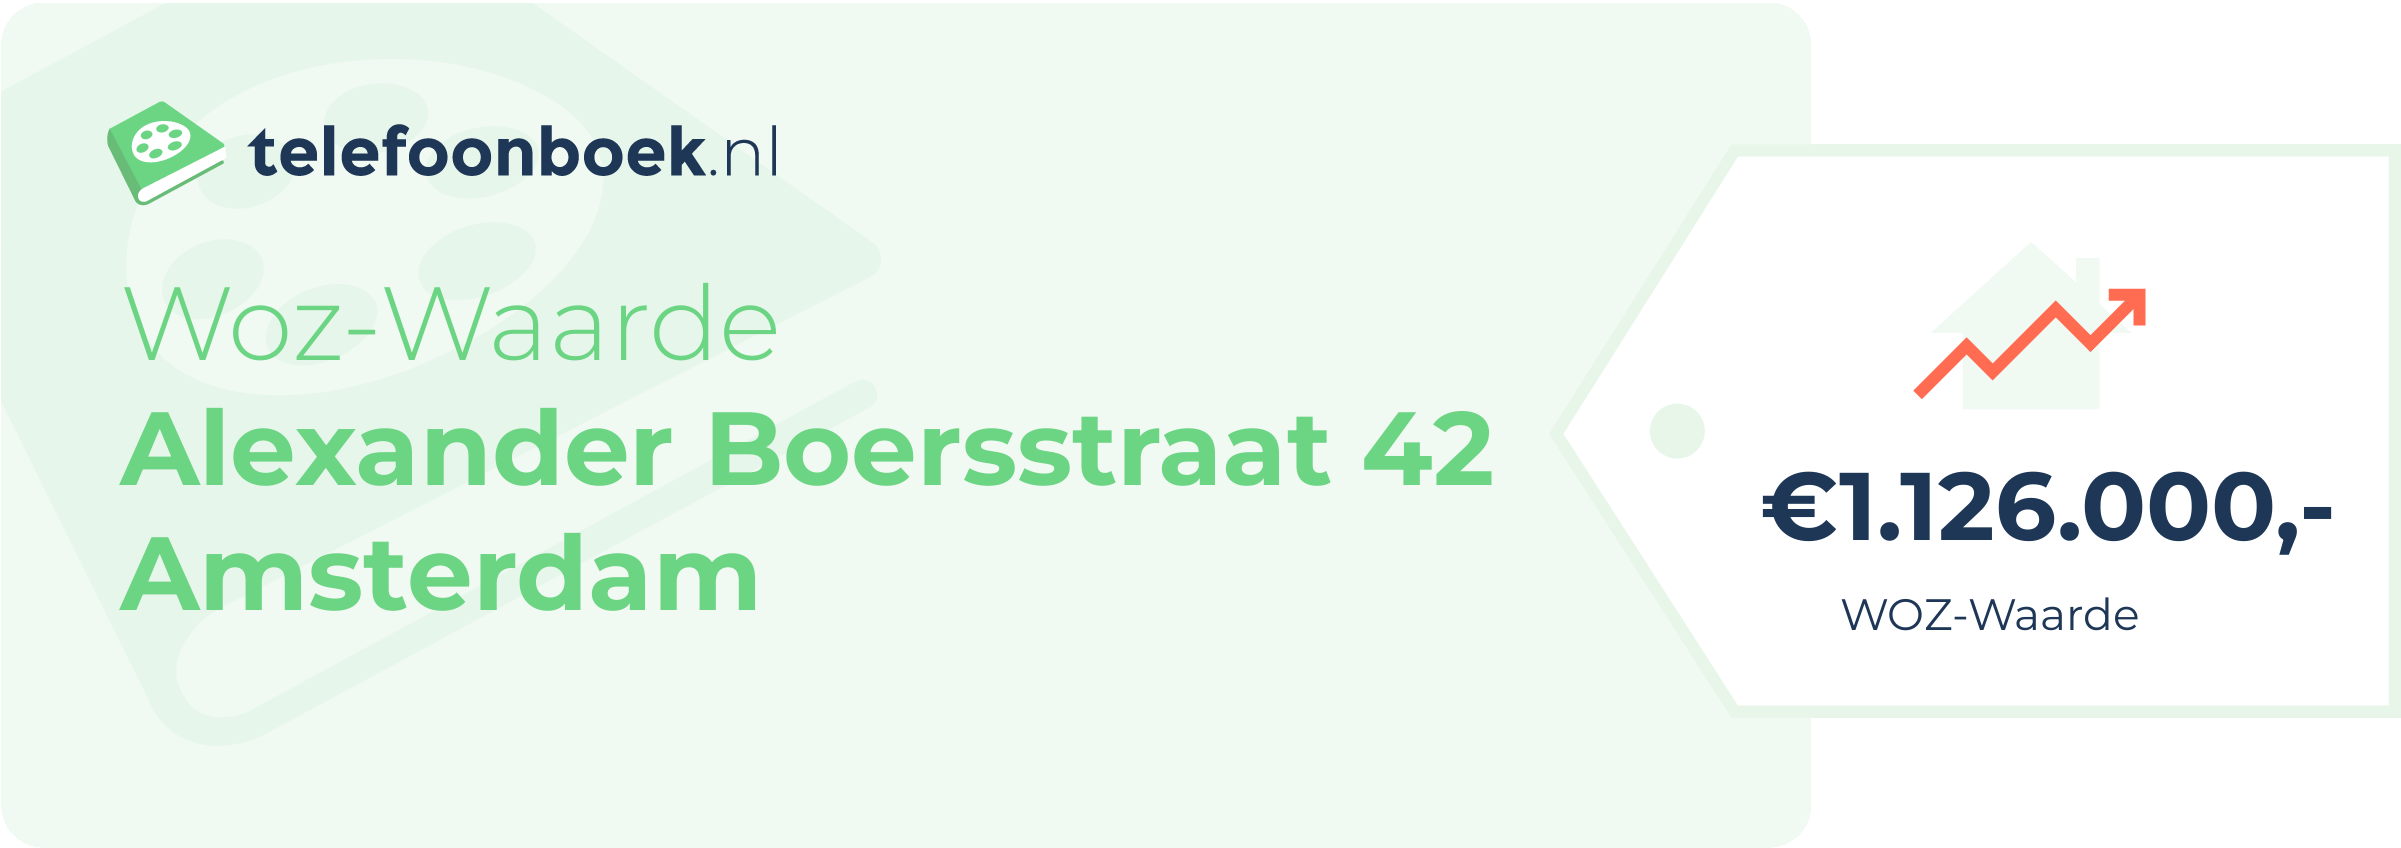 WOZ-waarde Alexander Boersstraat 42 Amsterdam